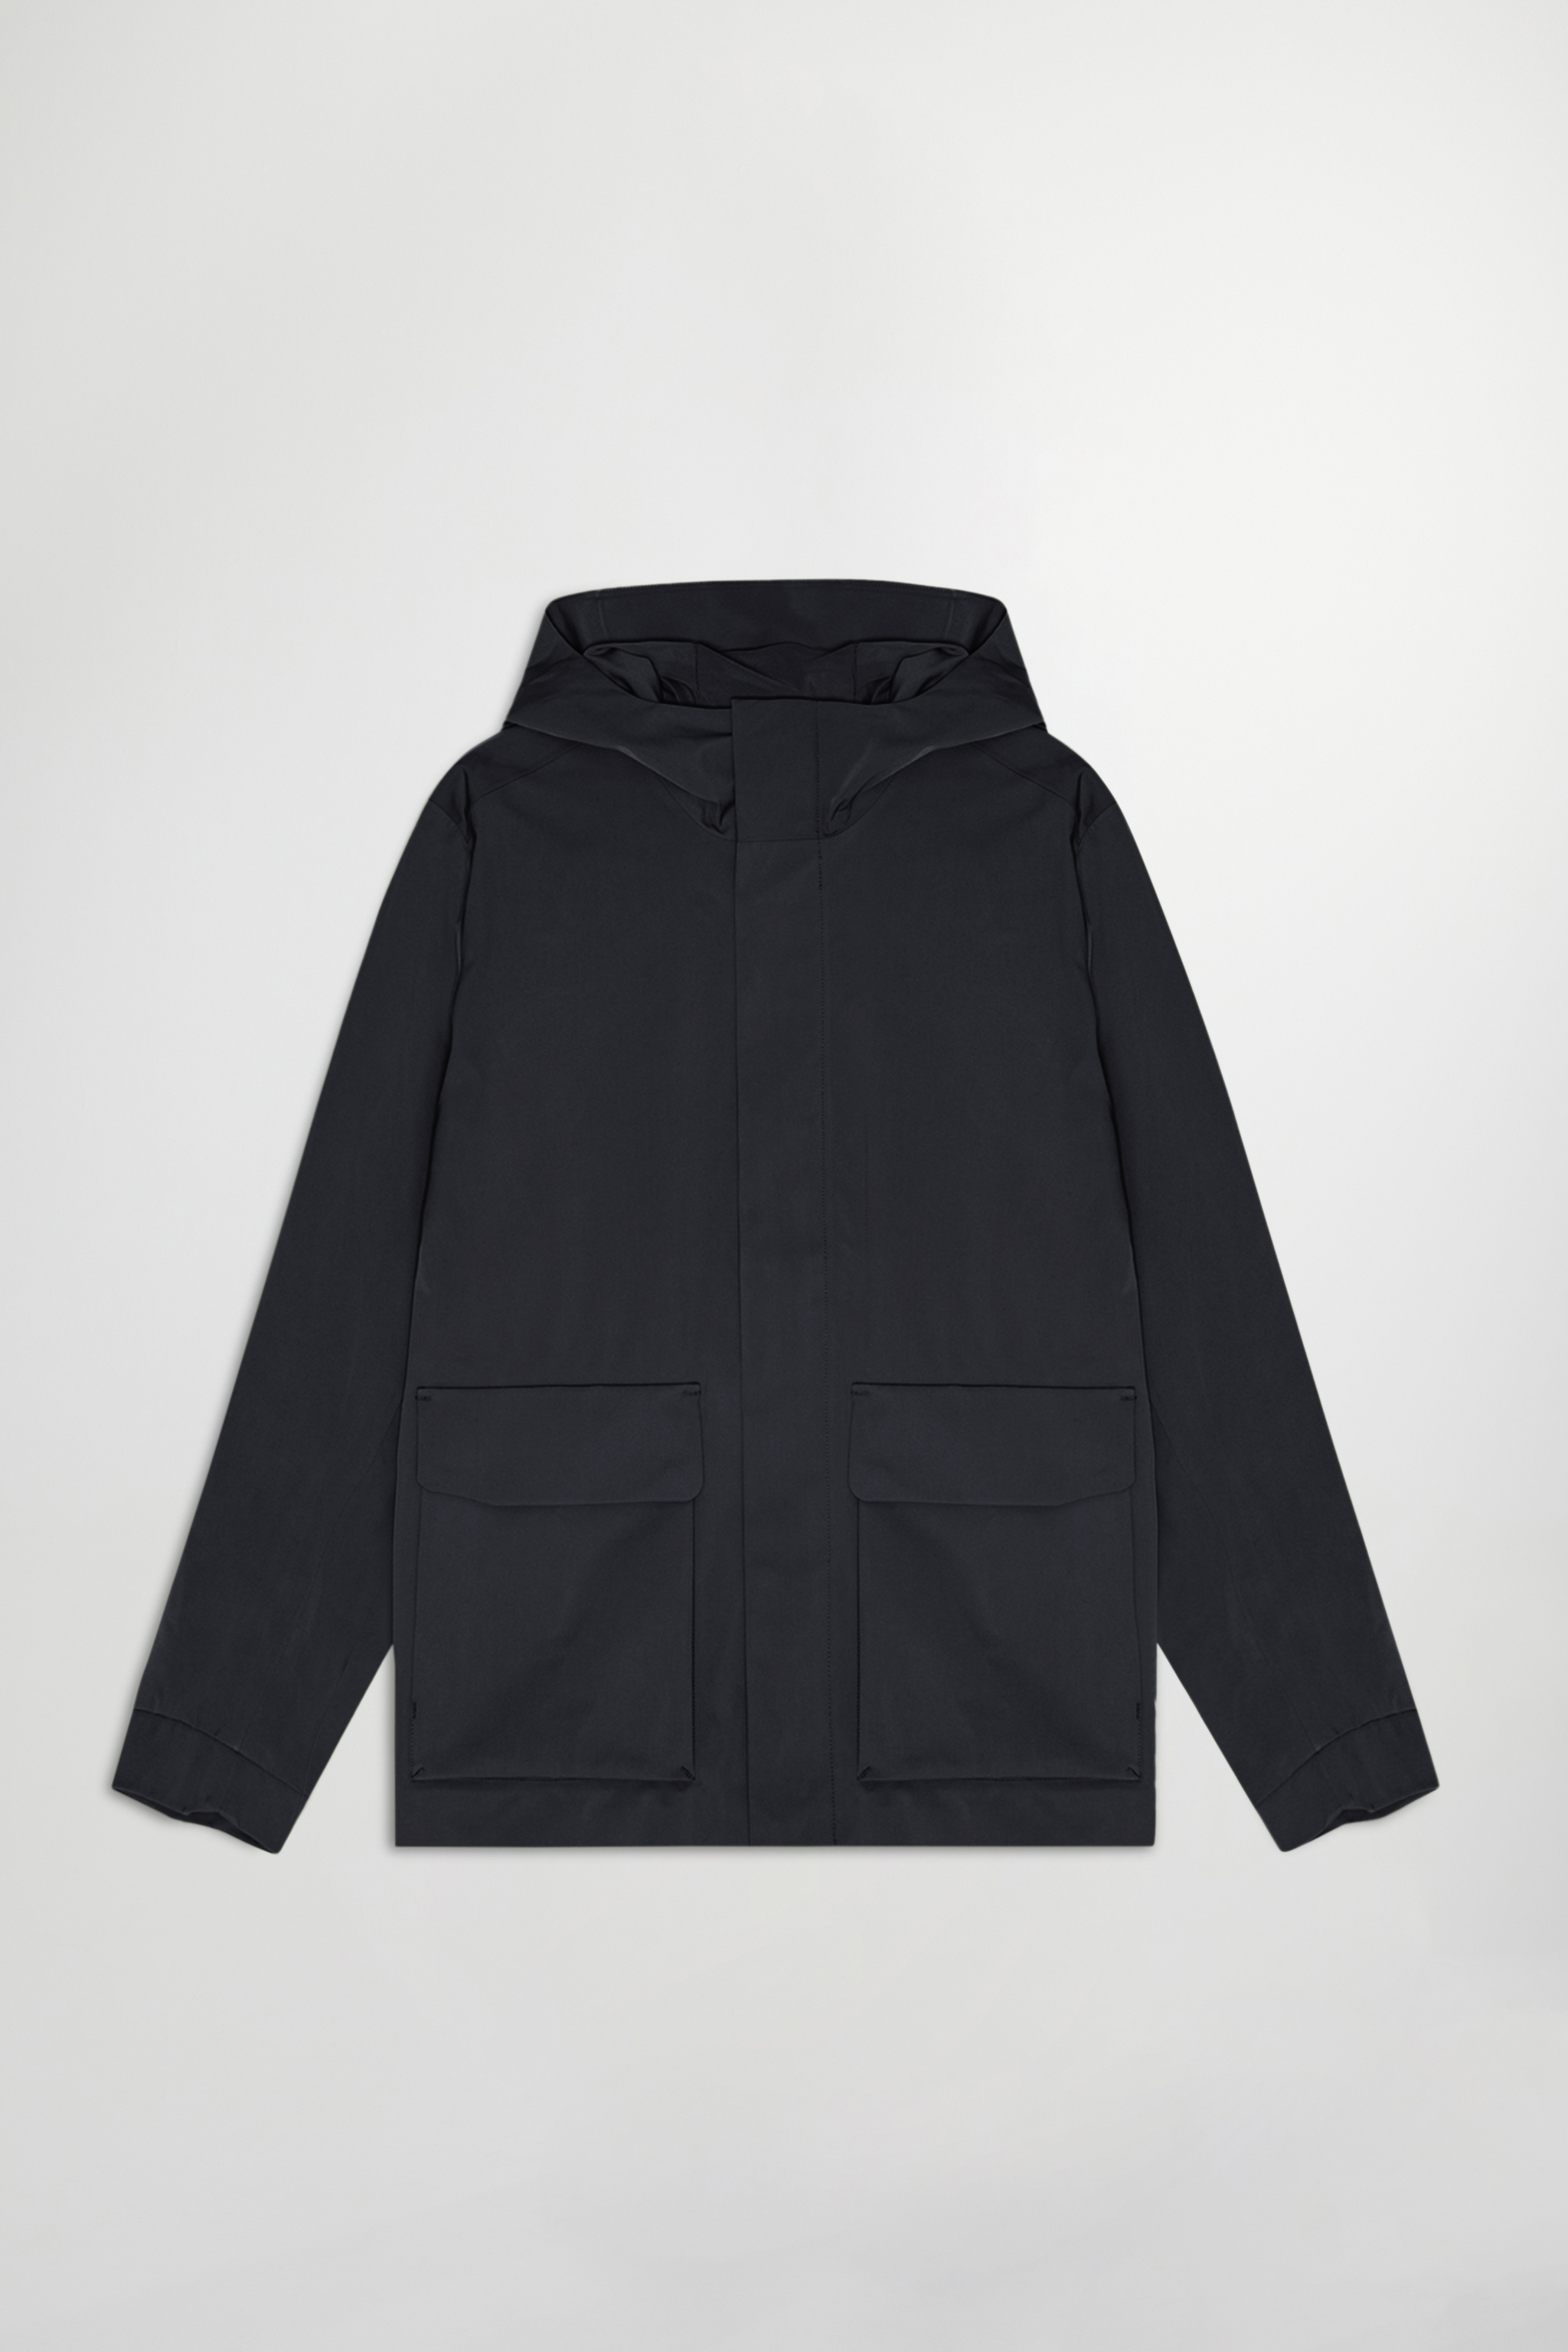 Beck 8240 men's jacket - Black - Buy online at NN.07®